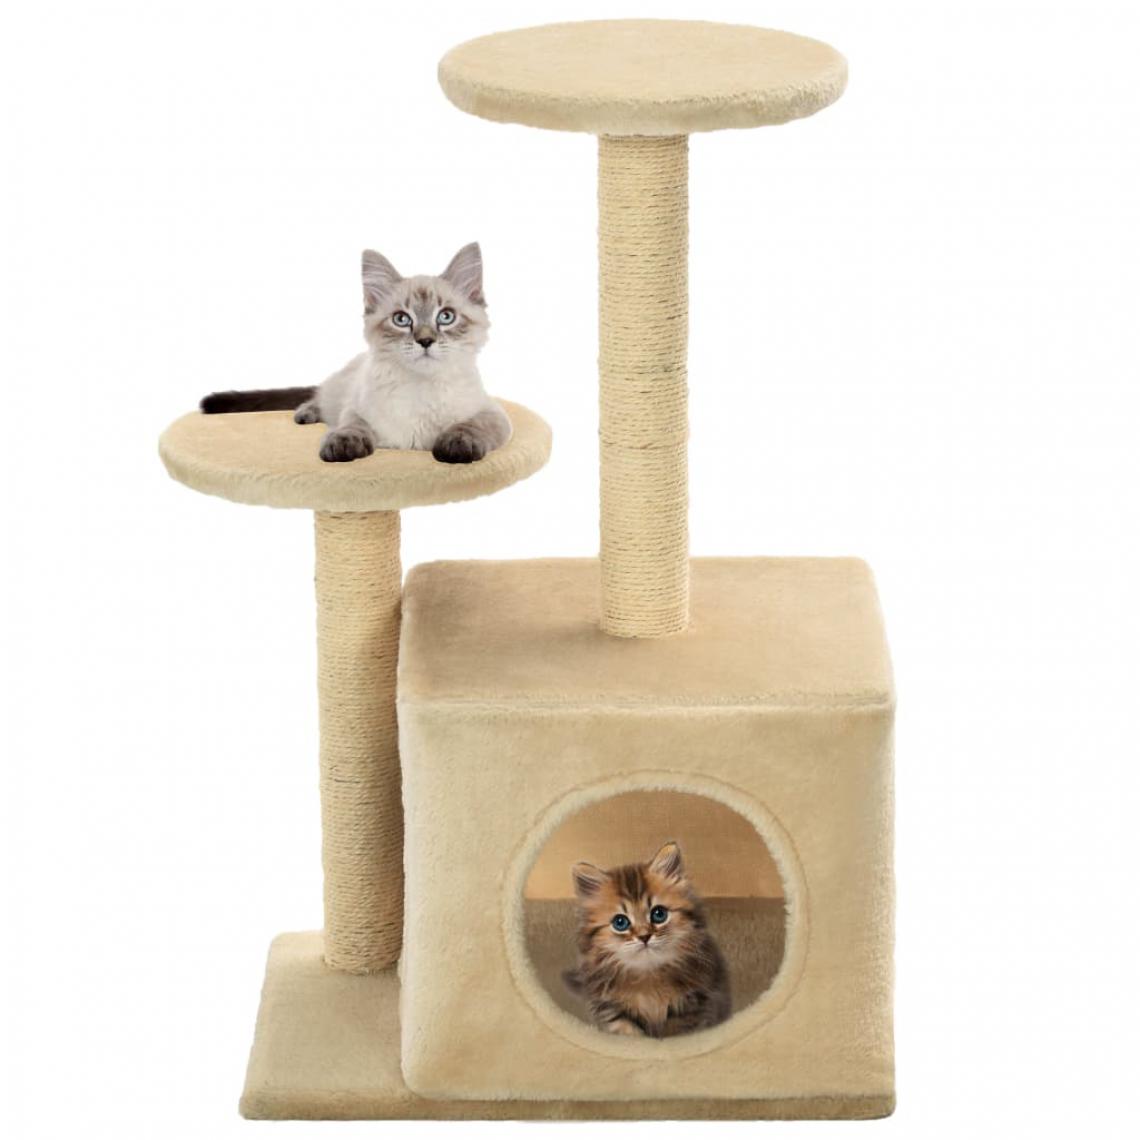 Helloshop26 - Arbre à chat griffoir grattoir niche jouet animaux peluché en sisal 60 cm beige 3702097 - Arbre à chat